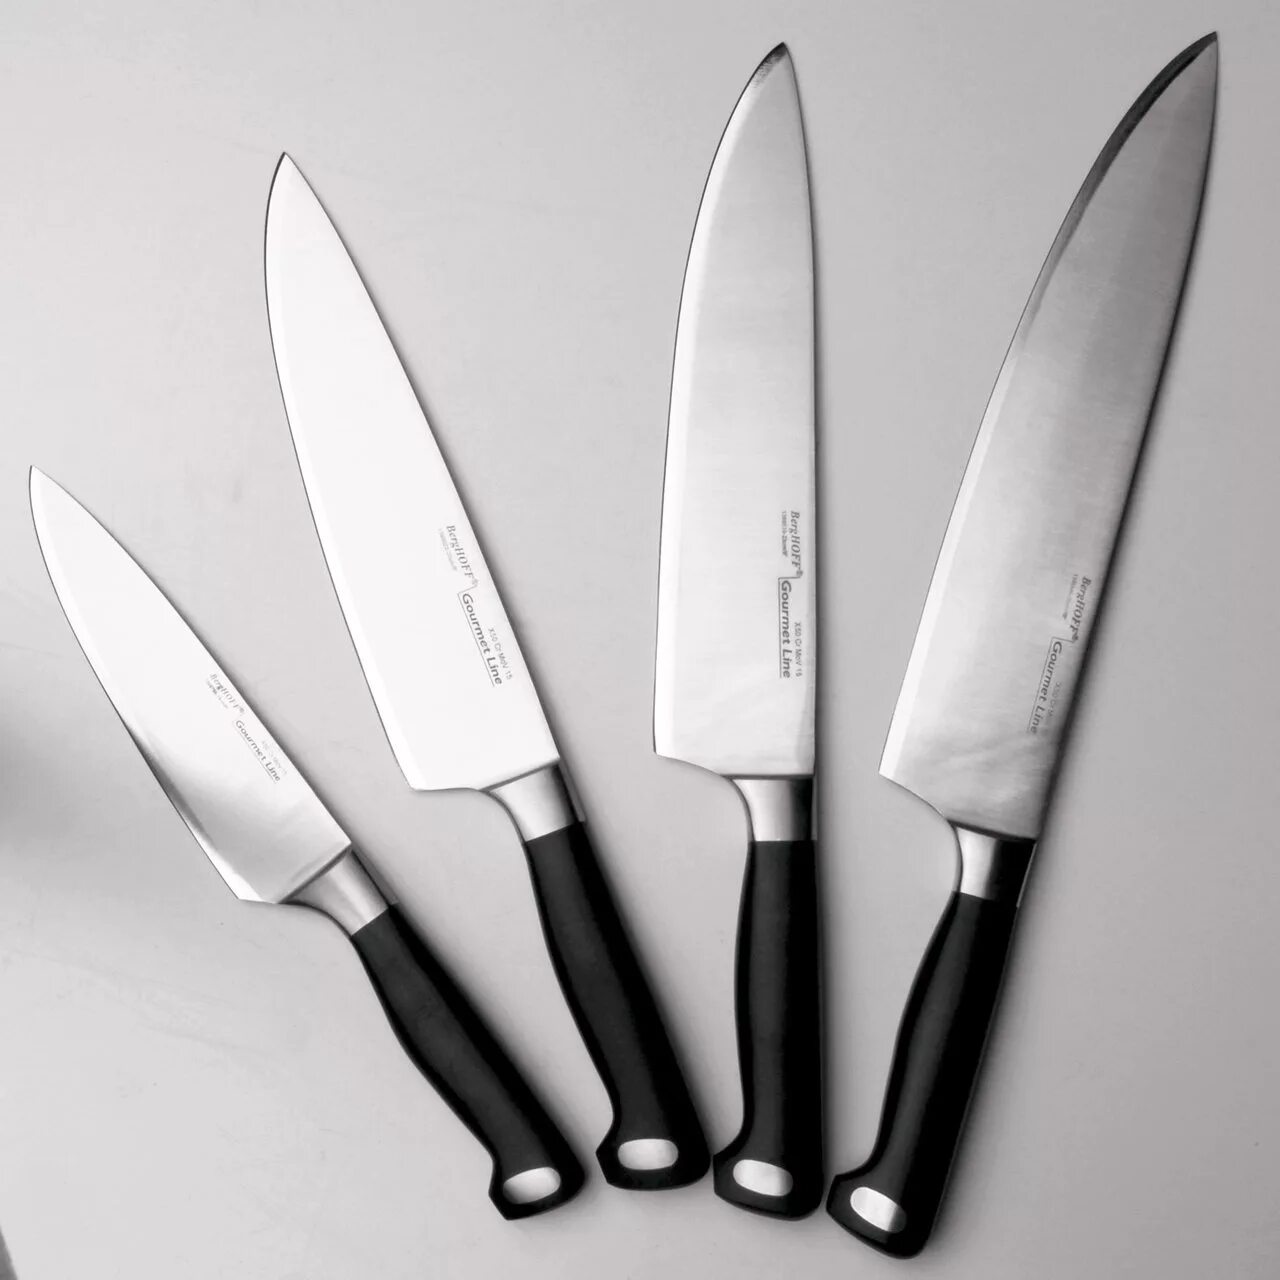 Ножь. Нож поварской BERGHOFF Gourmet. Tojiro Julia Vysotskaya professional Pro Дамаск. Нож поварской "Gourmet", 20 см. BERGHOFF нож разделочный Gourmet 20 см.